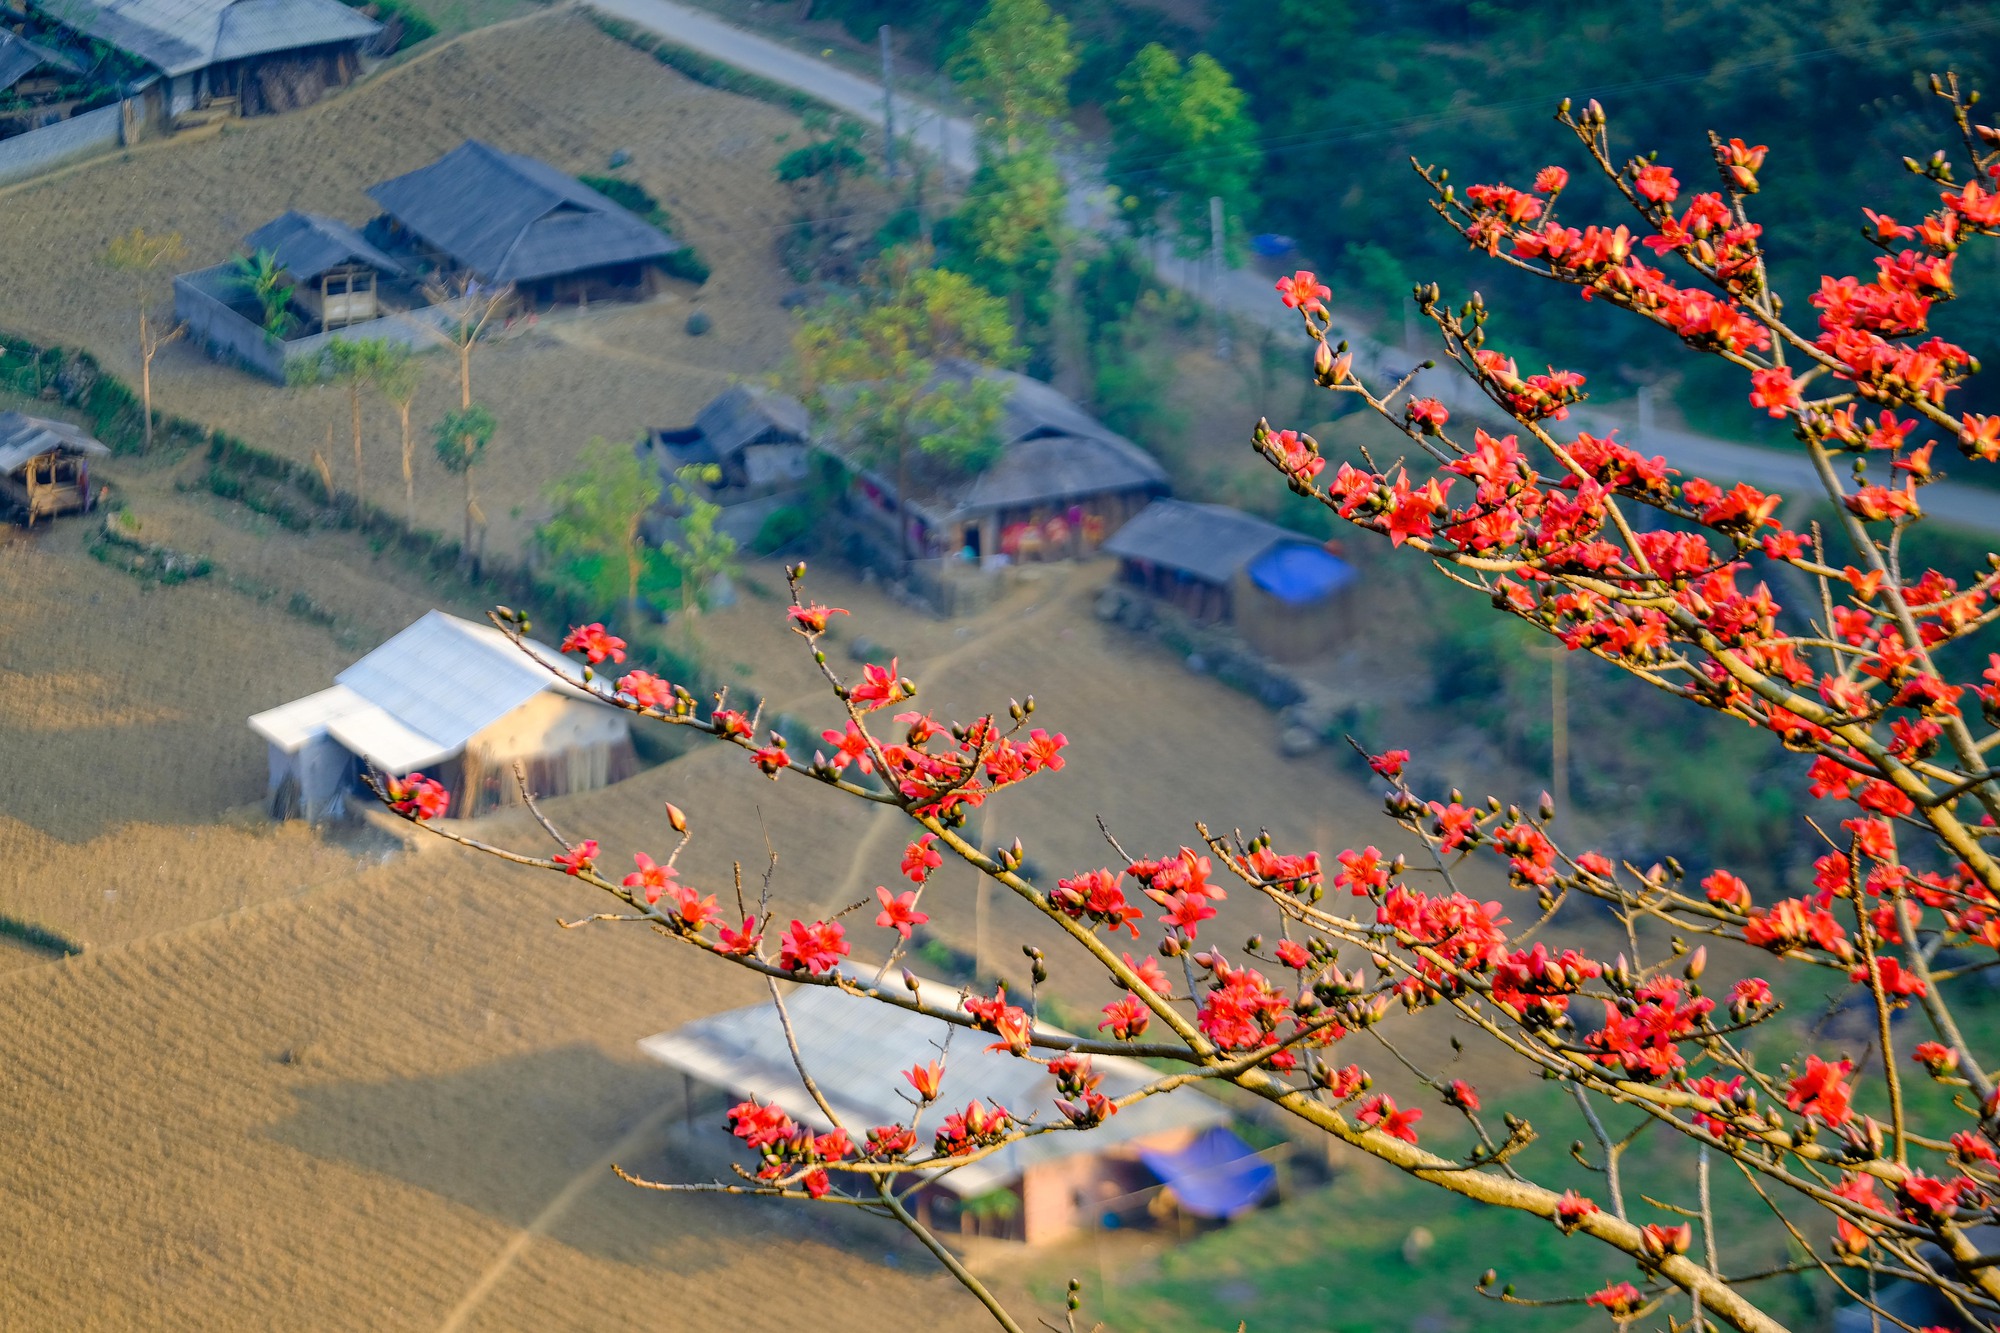 Mê mẩn ngắm hoa gạo rực đỏ núi rừng Hà Giang - Ảnh 10.